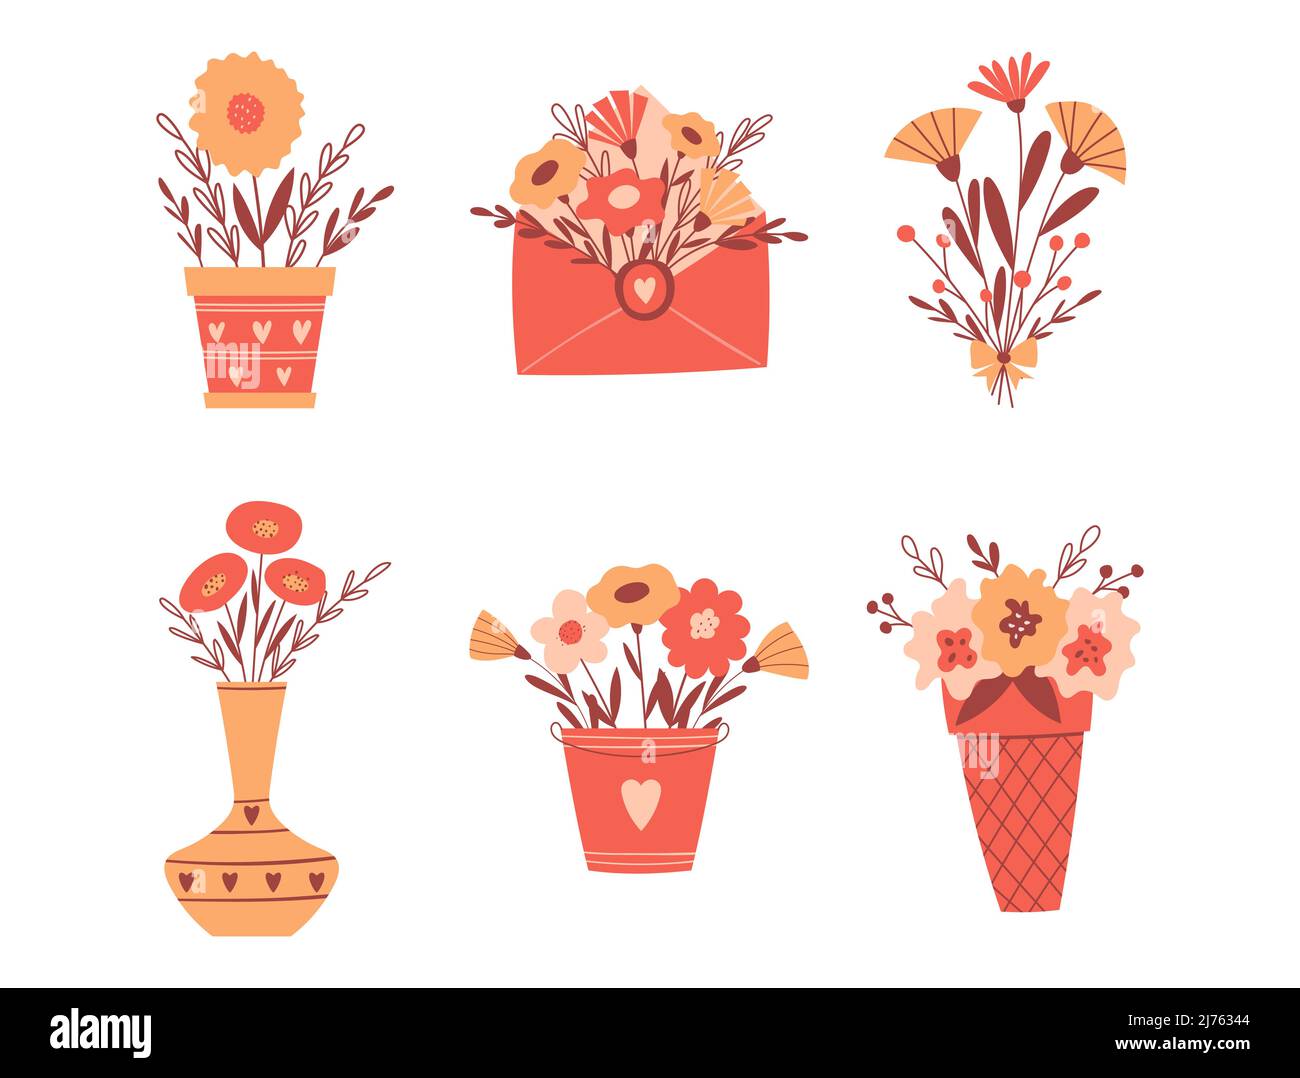 Un set di composizioni floreali in vasi, una busta, una piantatrice, un secchio. Semplici e carine composizioni botaniche in stile cartone animato. Illustrazione del vettore colore Illustrazione Vettoriale